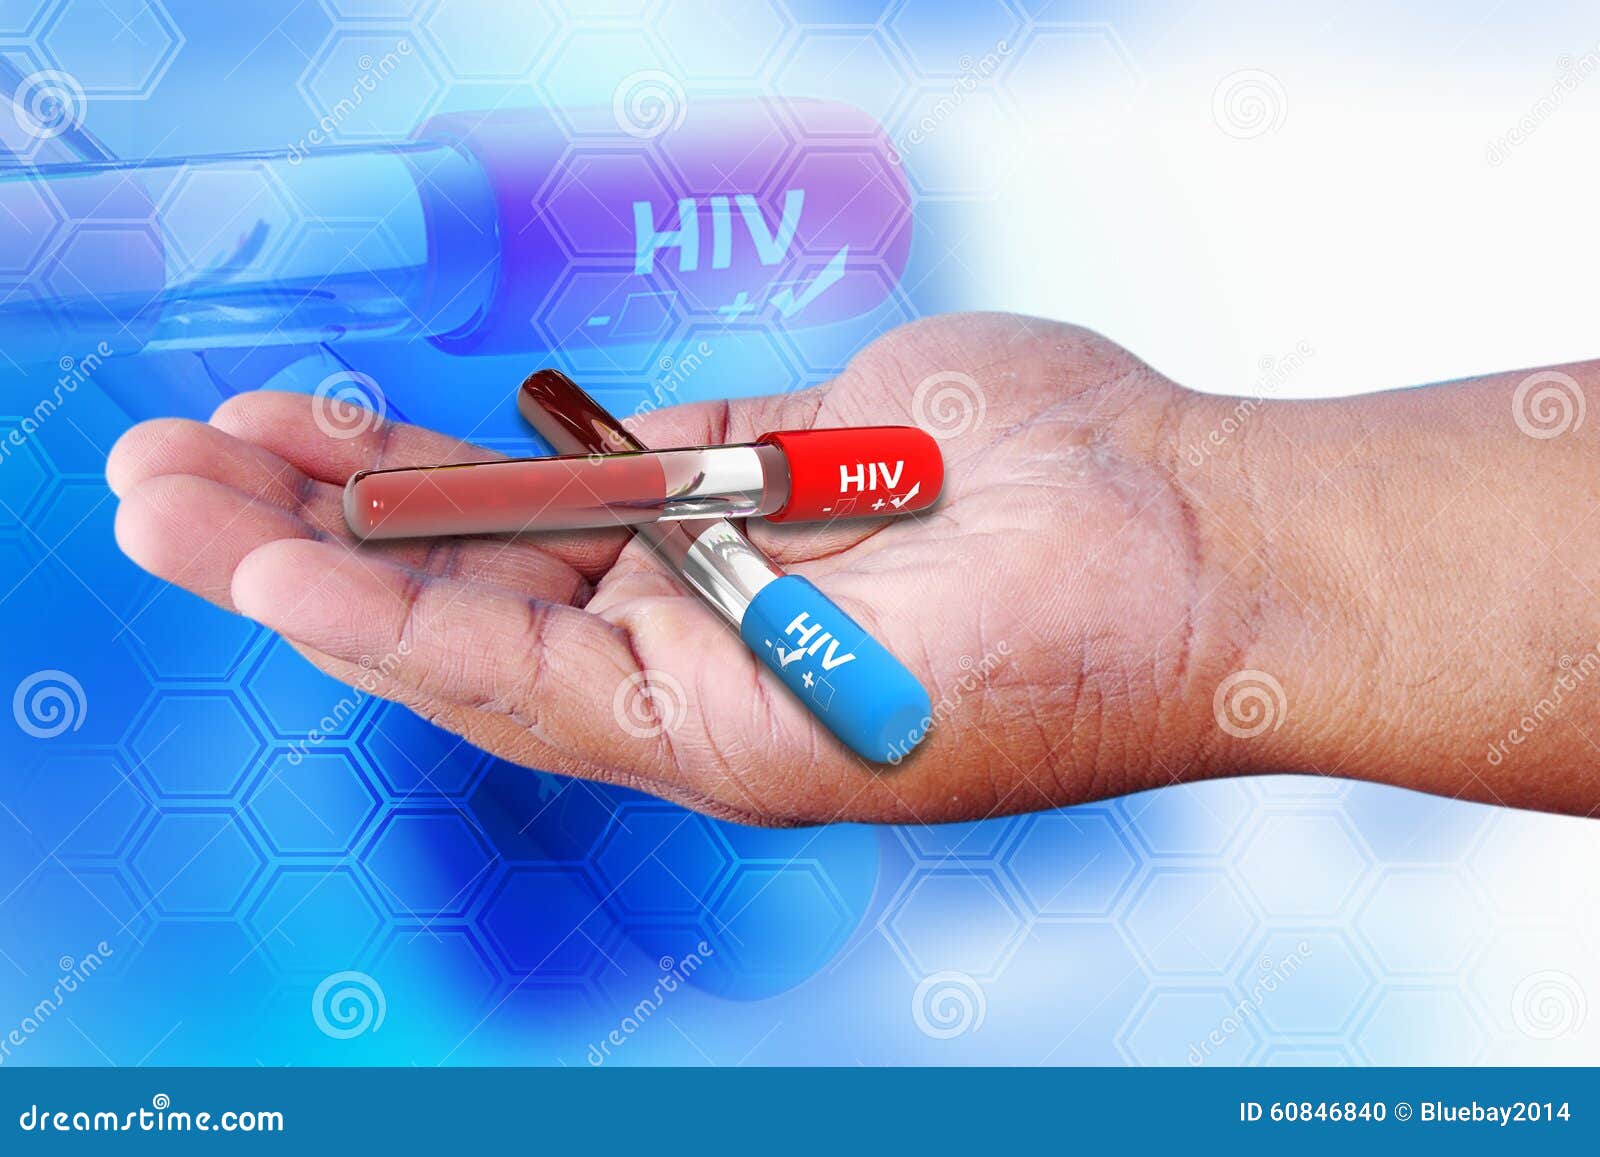 如何分辨HIV试纸的弱阳和包埋线? - 知乎